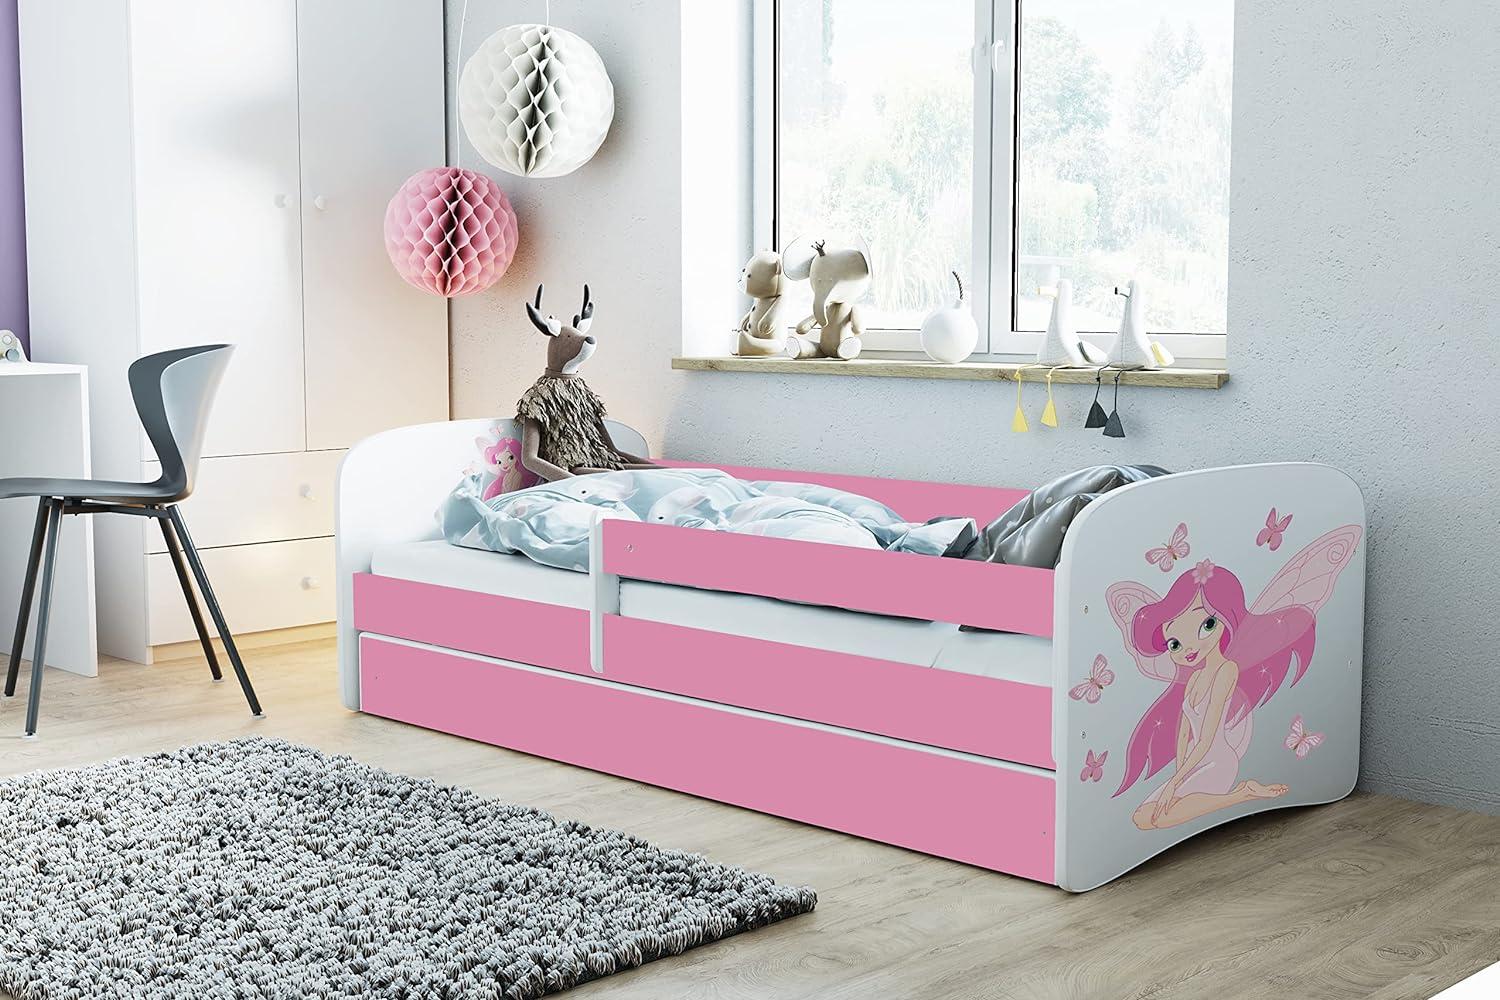 Kocot Kids 'Fee mit Schmetterlingen' Einzelbett pink 70x140 cm inkl. Rausfallschutz, Matratze, Schublade und Lattenrost Bild 1